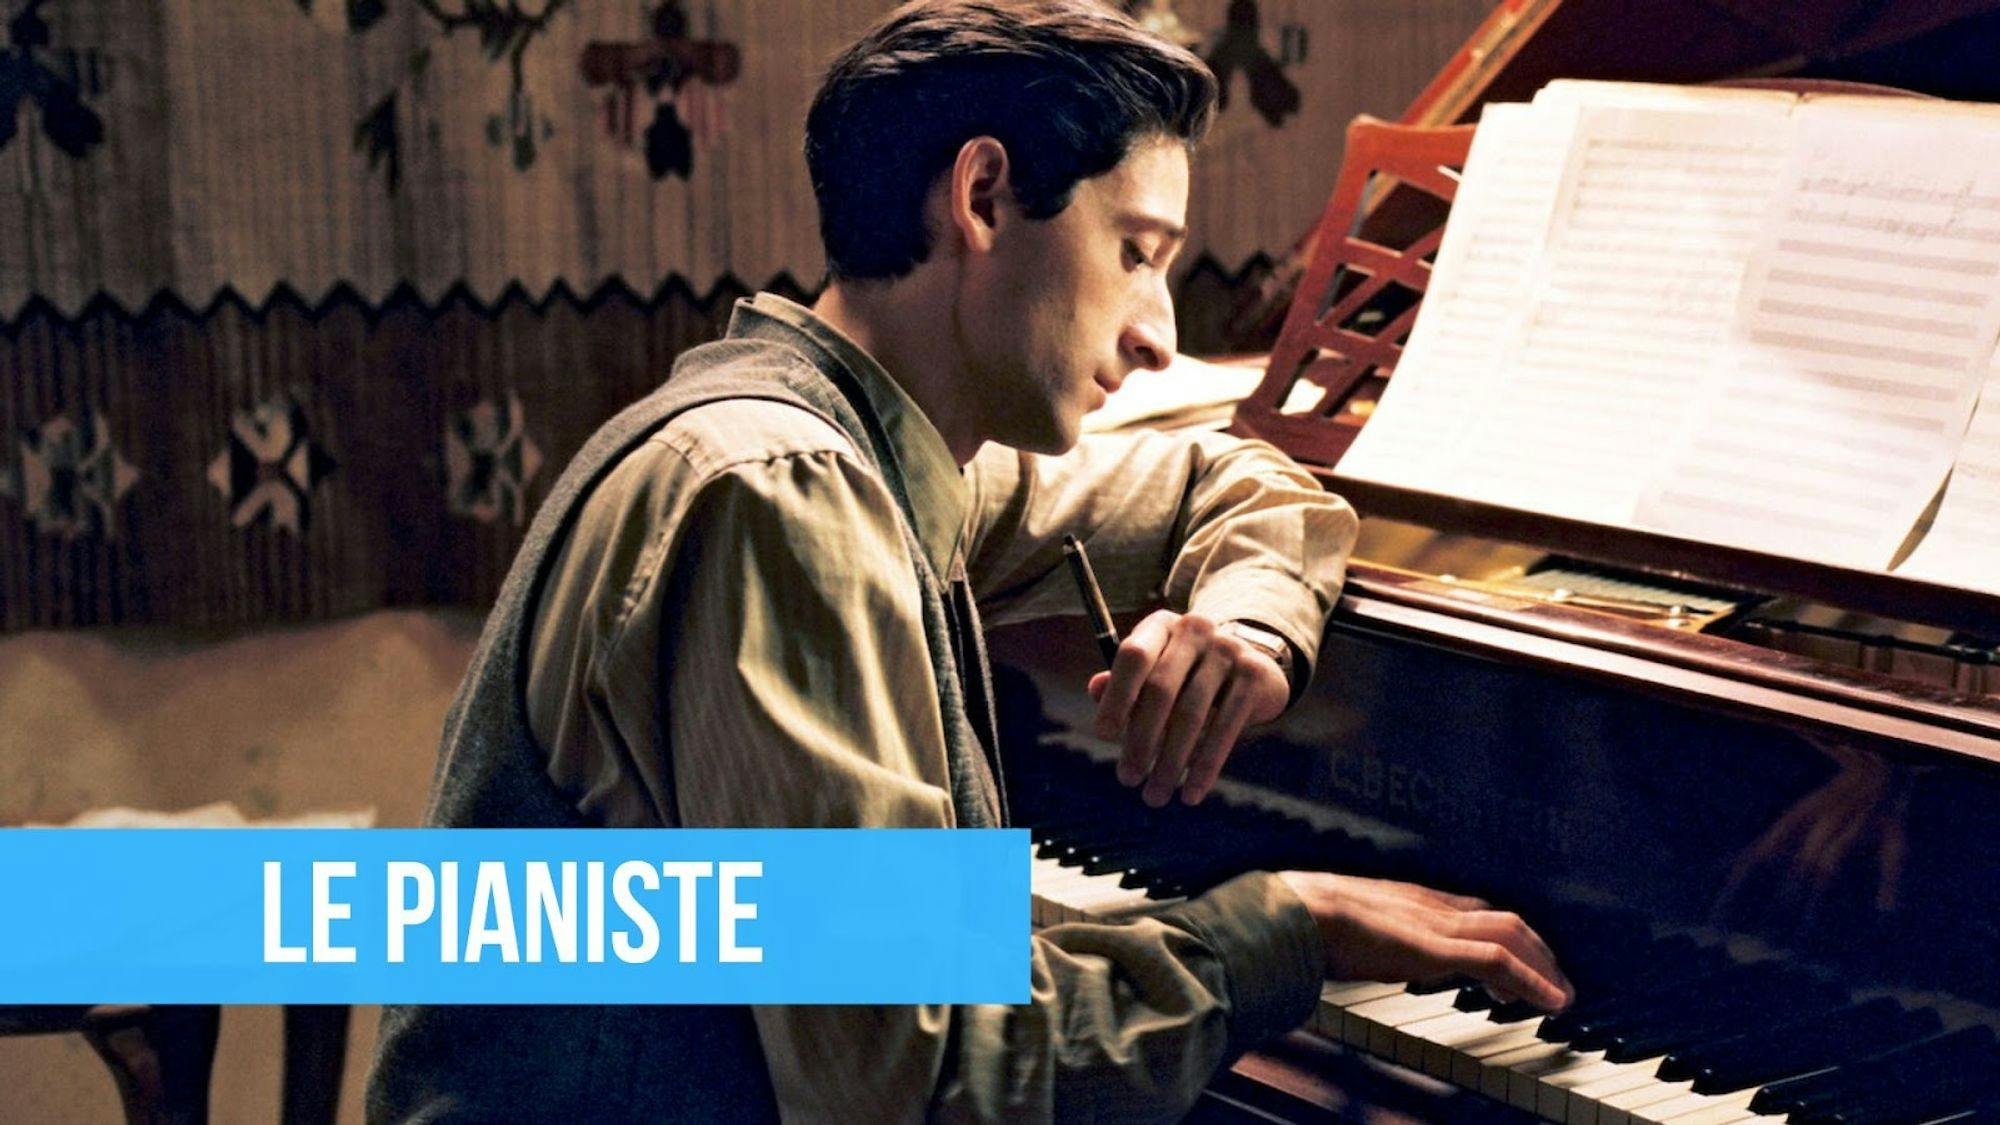 poster du film Le pianiste avec un titre sur fond bleu